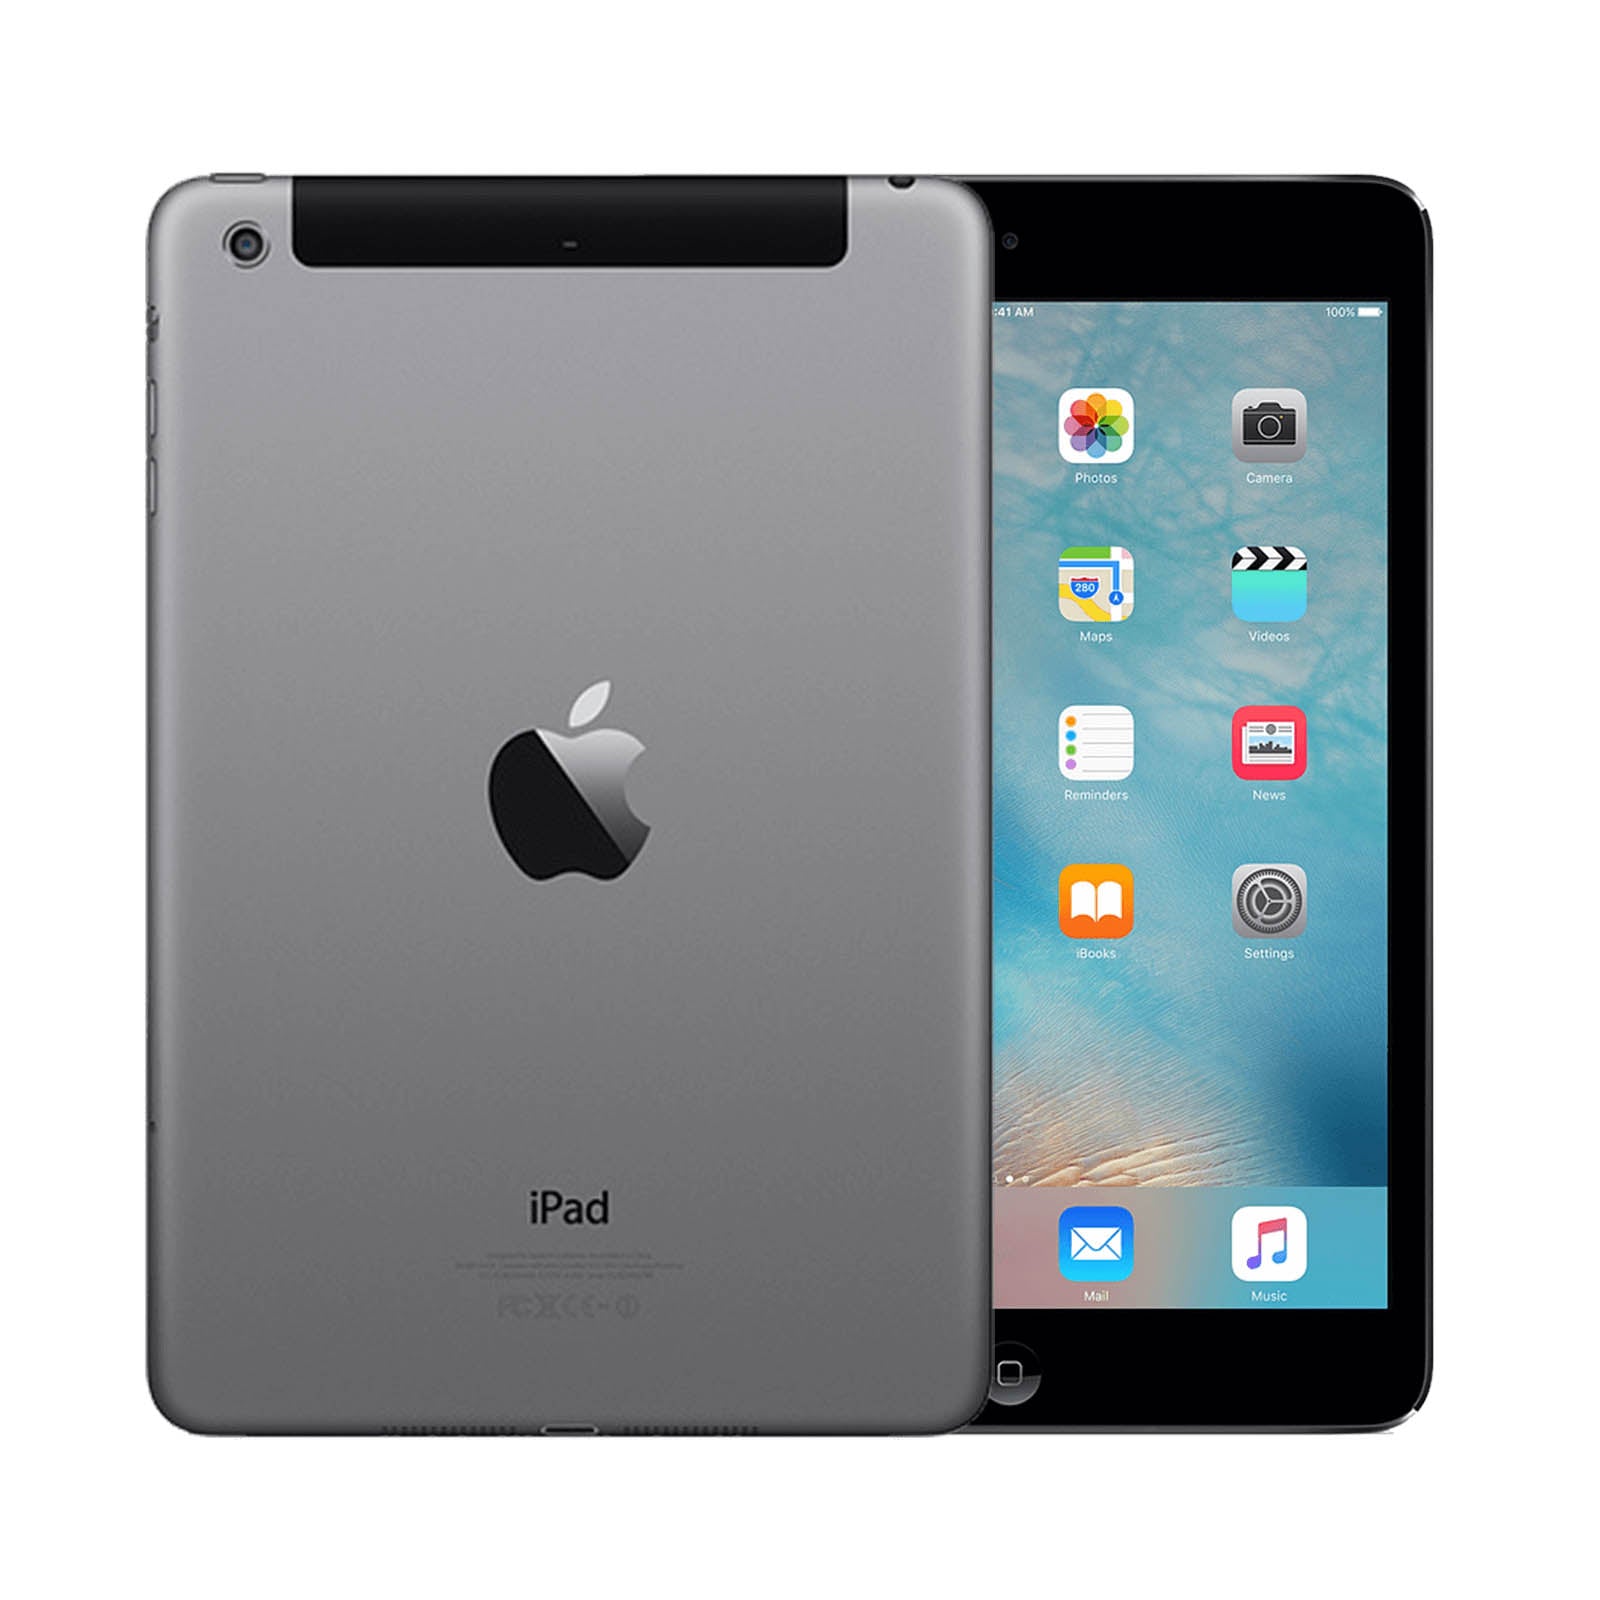 Apple iPad mini 2 64GB Black Good - Unlocked